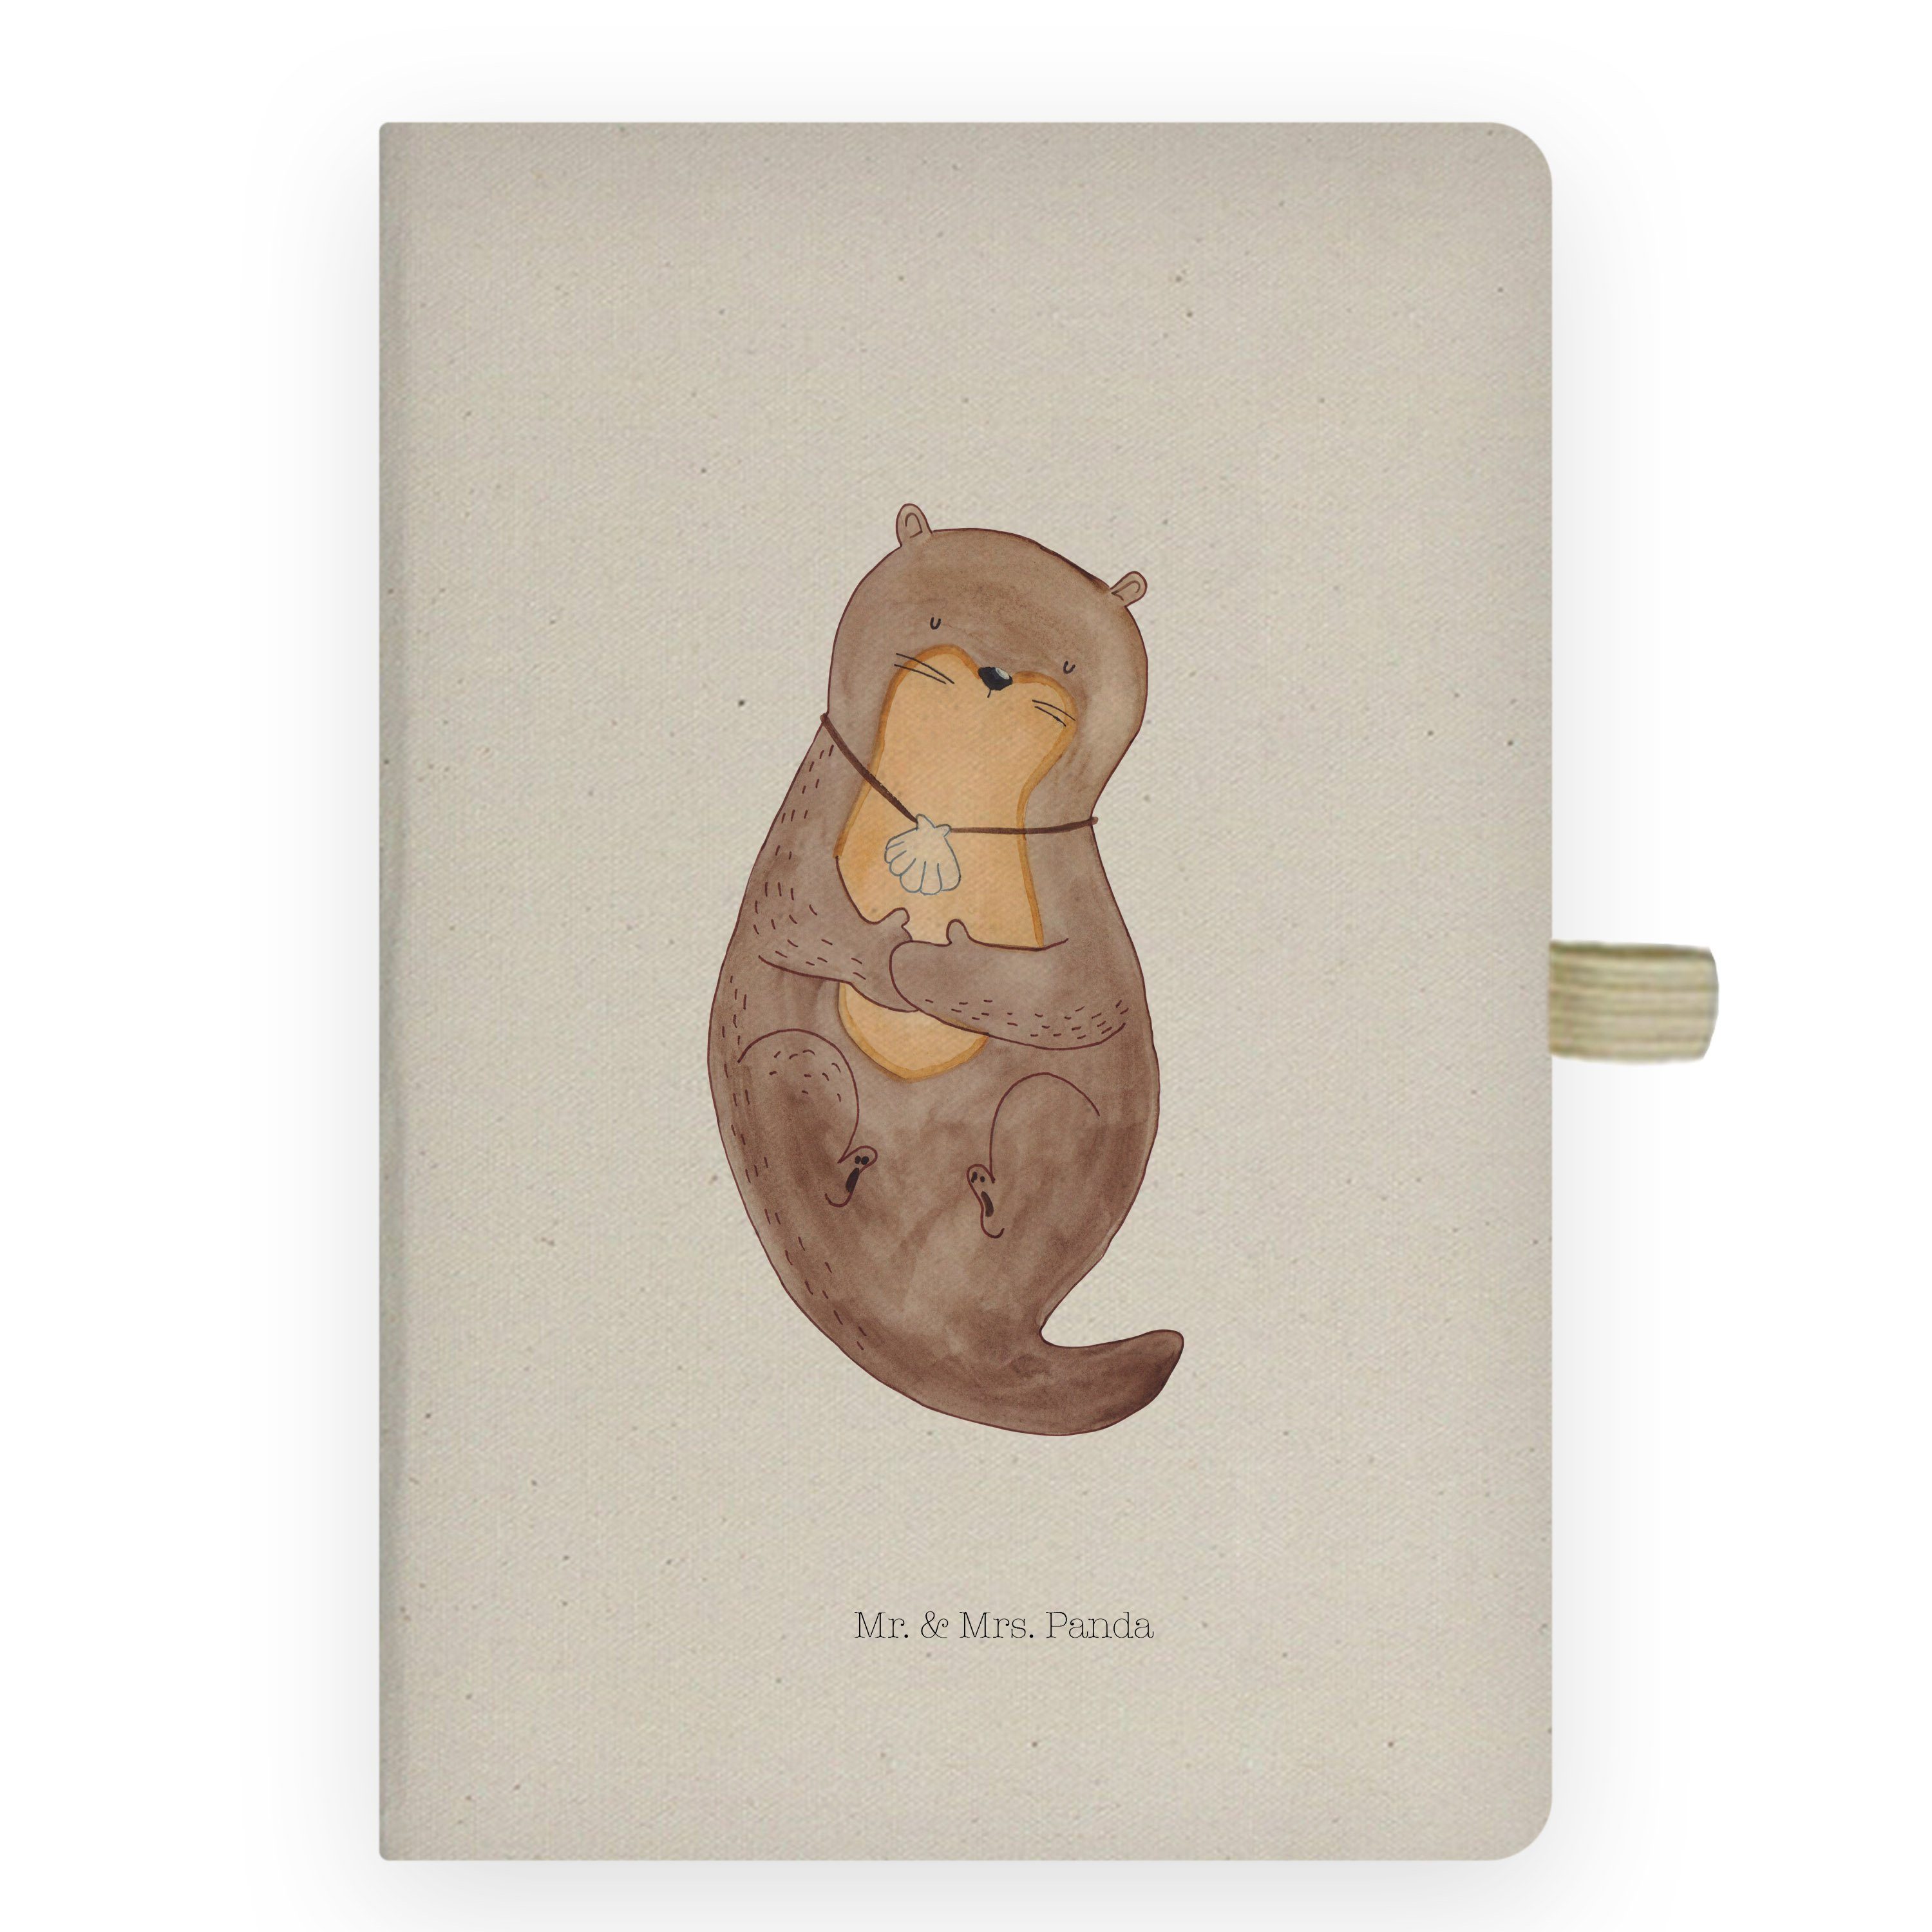 Mr. & Mrs. Panda Notizbuch Otter Muschel - Transparent - Geschenk, grübeln, Schreibheft, Eintrag Mr. & Mrs. Panda, Umweltfreundlich